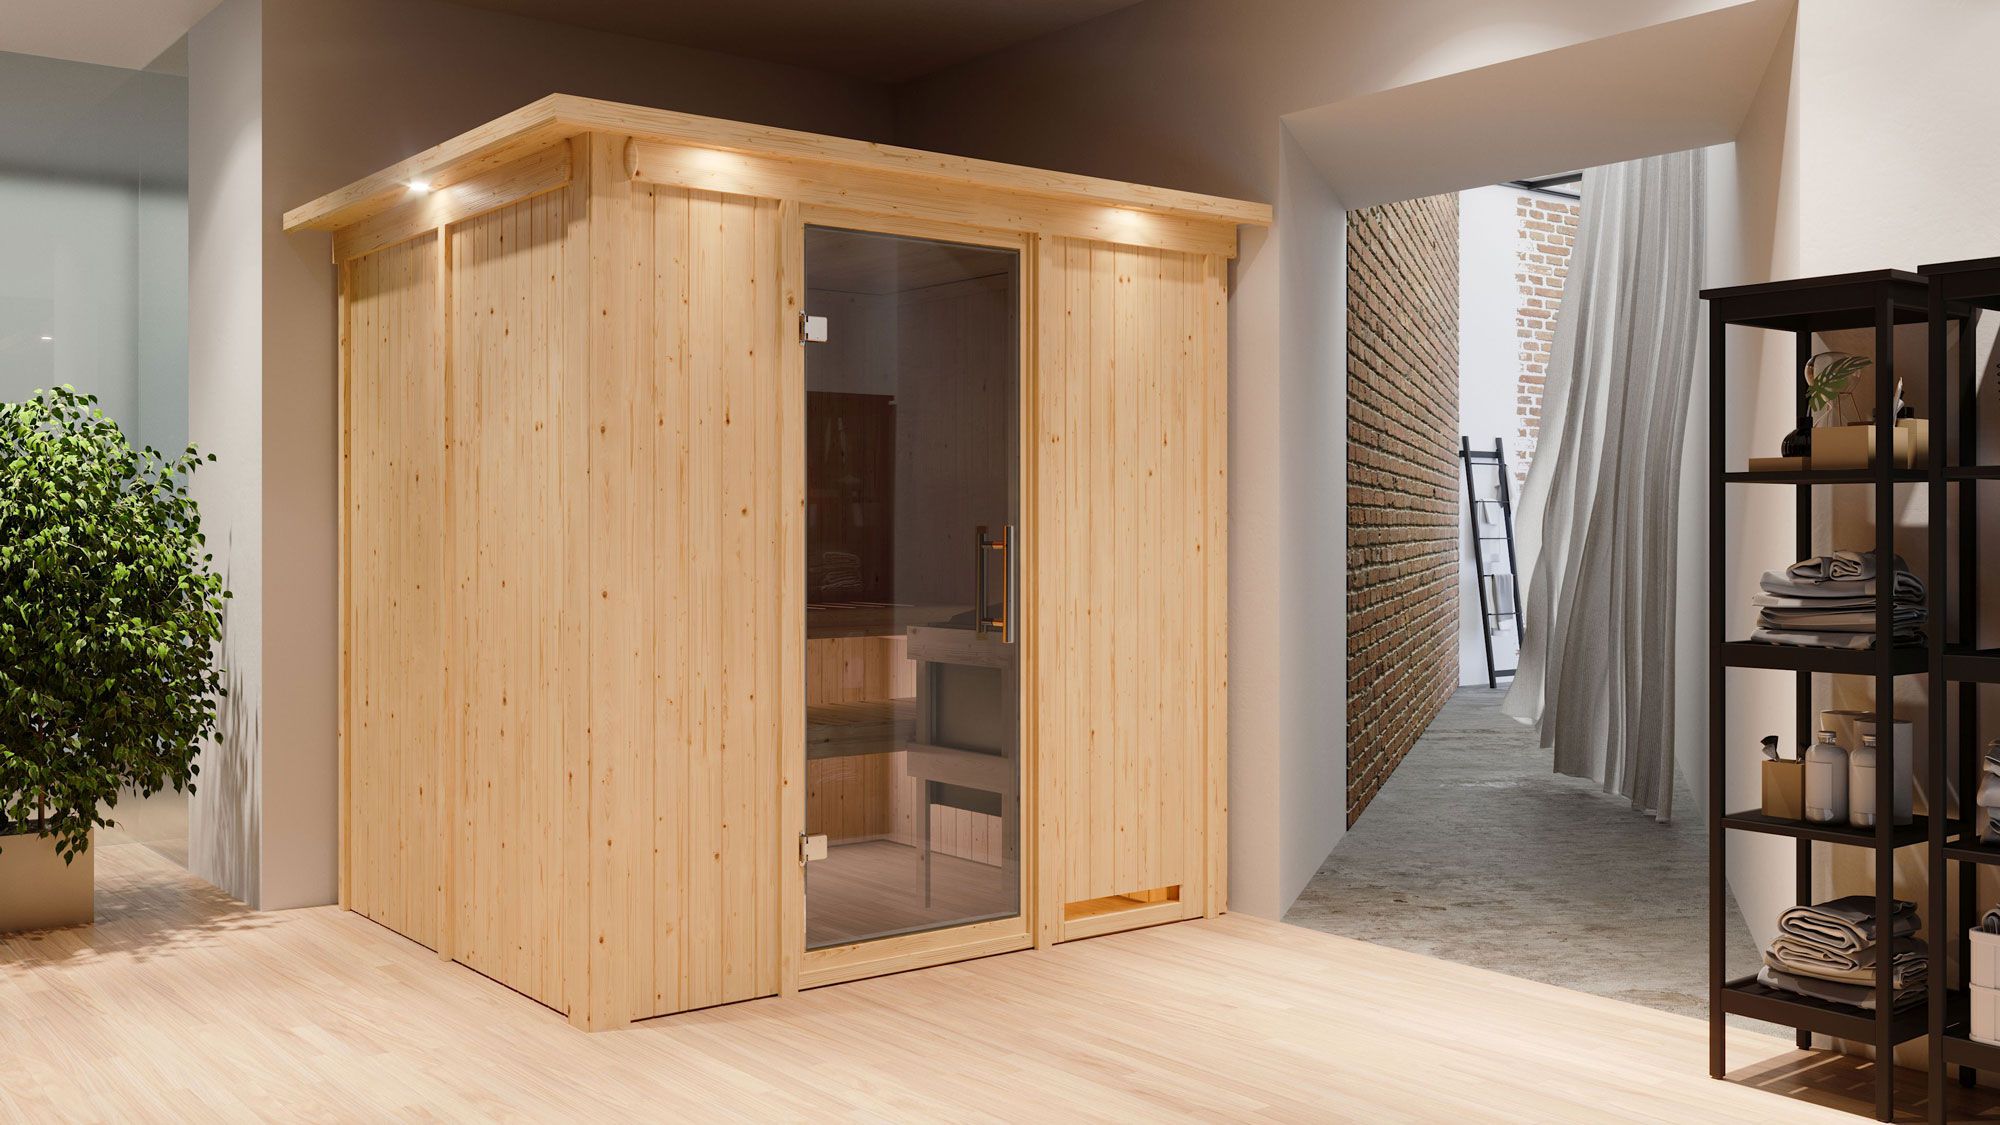 Sauna "Eemil" SET mit graphitfarbener Tür und Kranz - Farbe: Natur, Ofen externe Steuerung easy 9 kW - 210 x 184 x 202 cm (B x T x H)